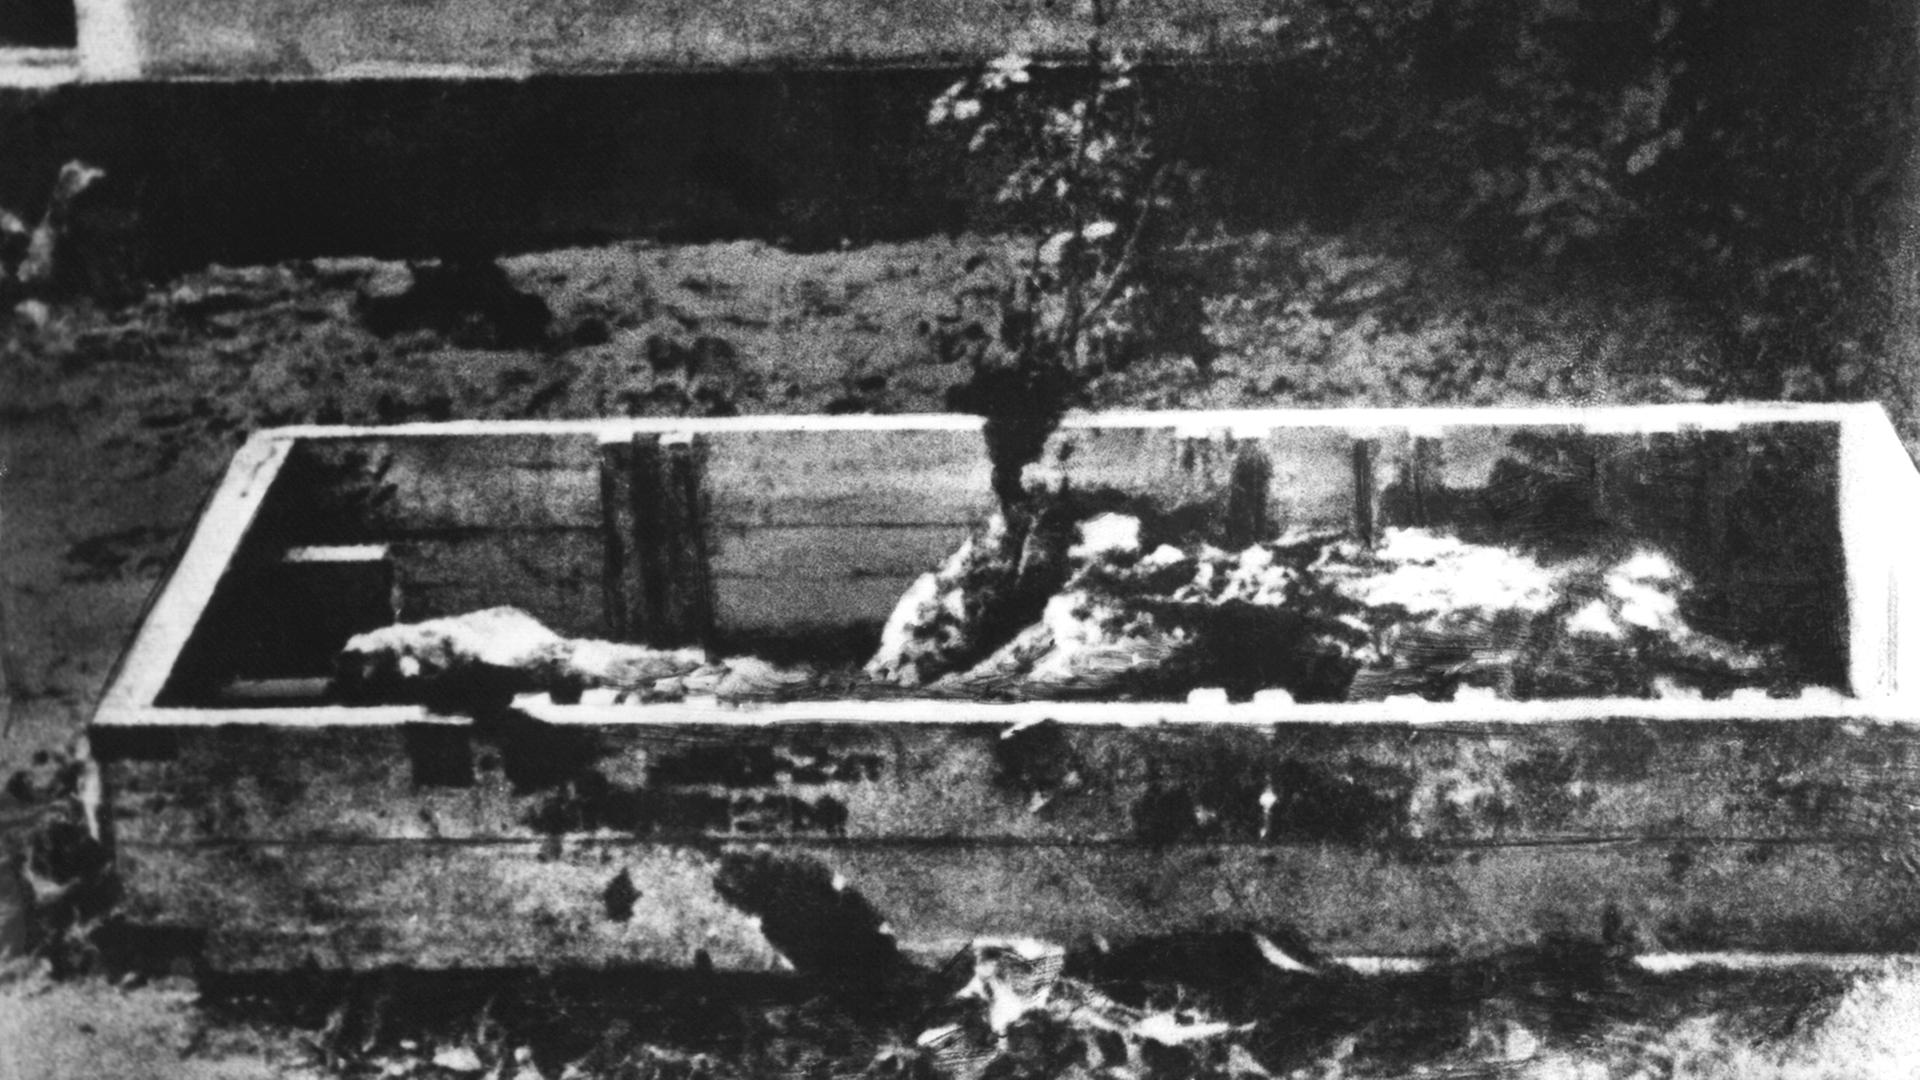 Das Bild zeigt die angebliche verkohlte Leiche Adolf Hitlers. Nach dem gemeinsamen Selbstmord am 30. April 1945 von Adolf Hitler und seiner Ehefrau Eva Braun (Heirat am 29. April 1945) wurden beide Leichen nach der Aussage von Kempka, dem langjährigen Fahrer von Hitler, durch diesen im Garten der Reichskanzlei nach Übergießen mit Benzin verbrannt.